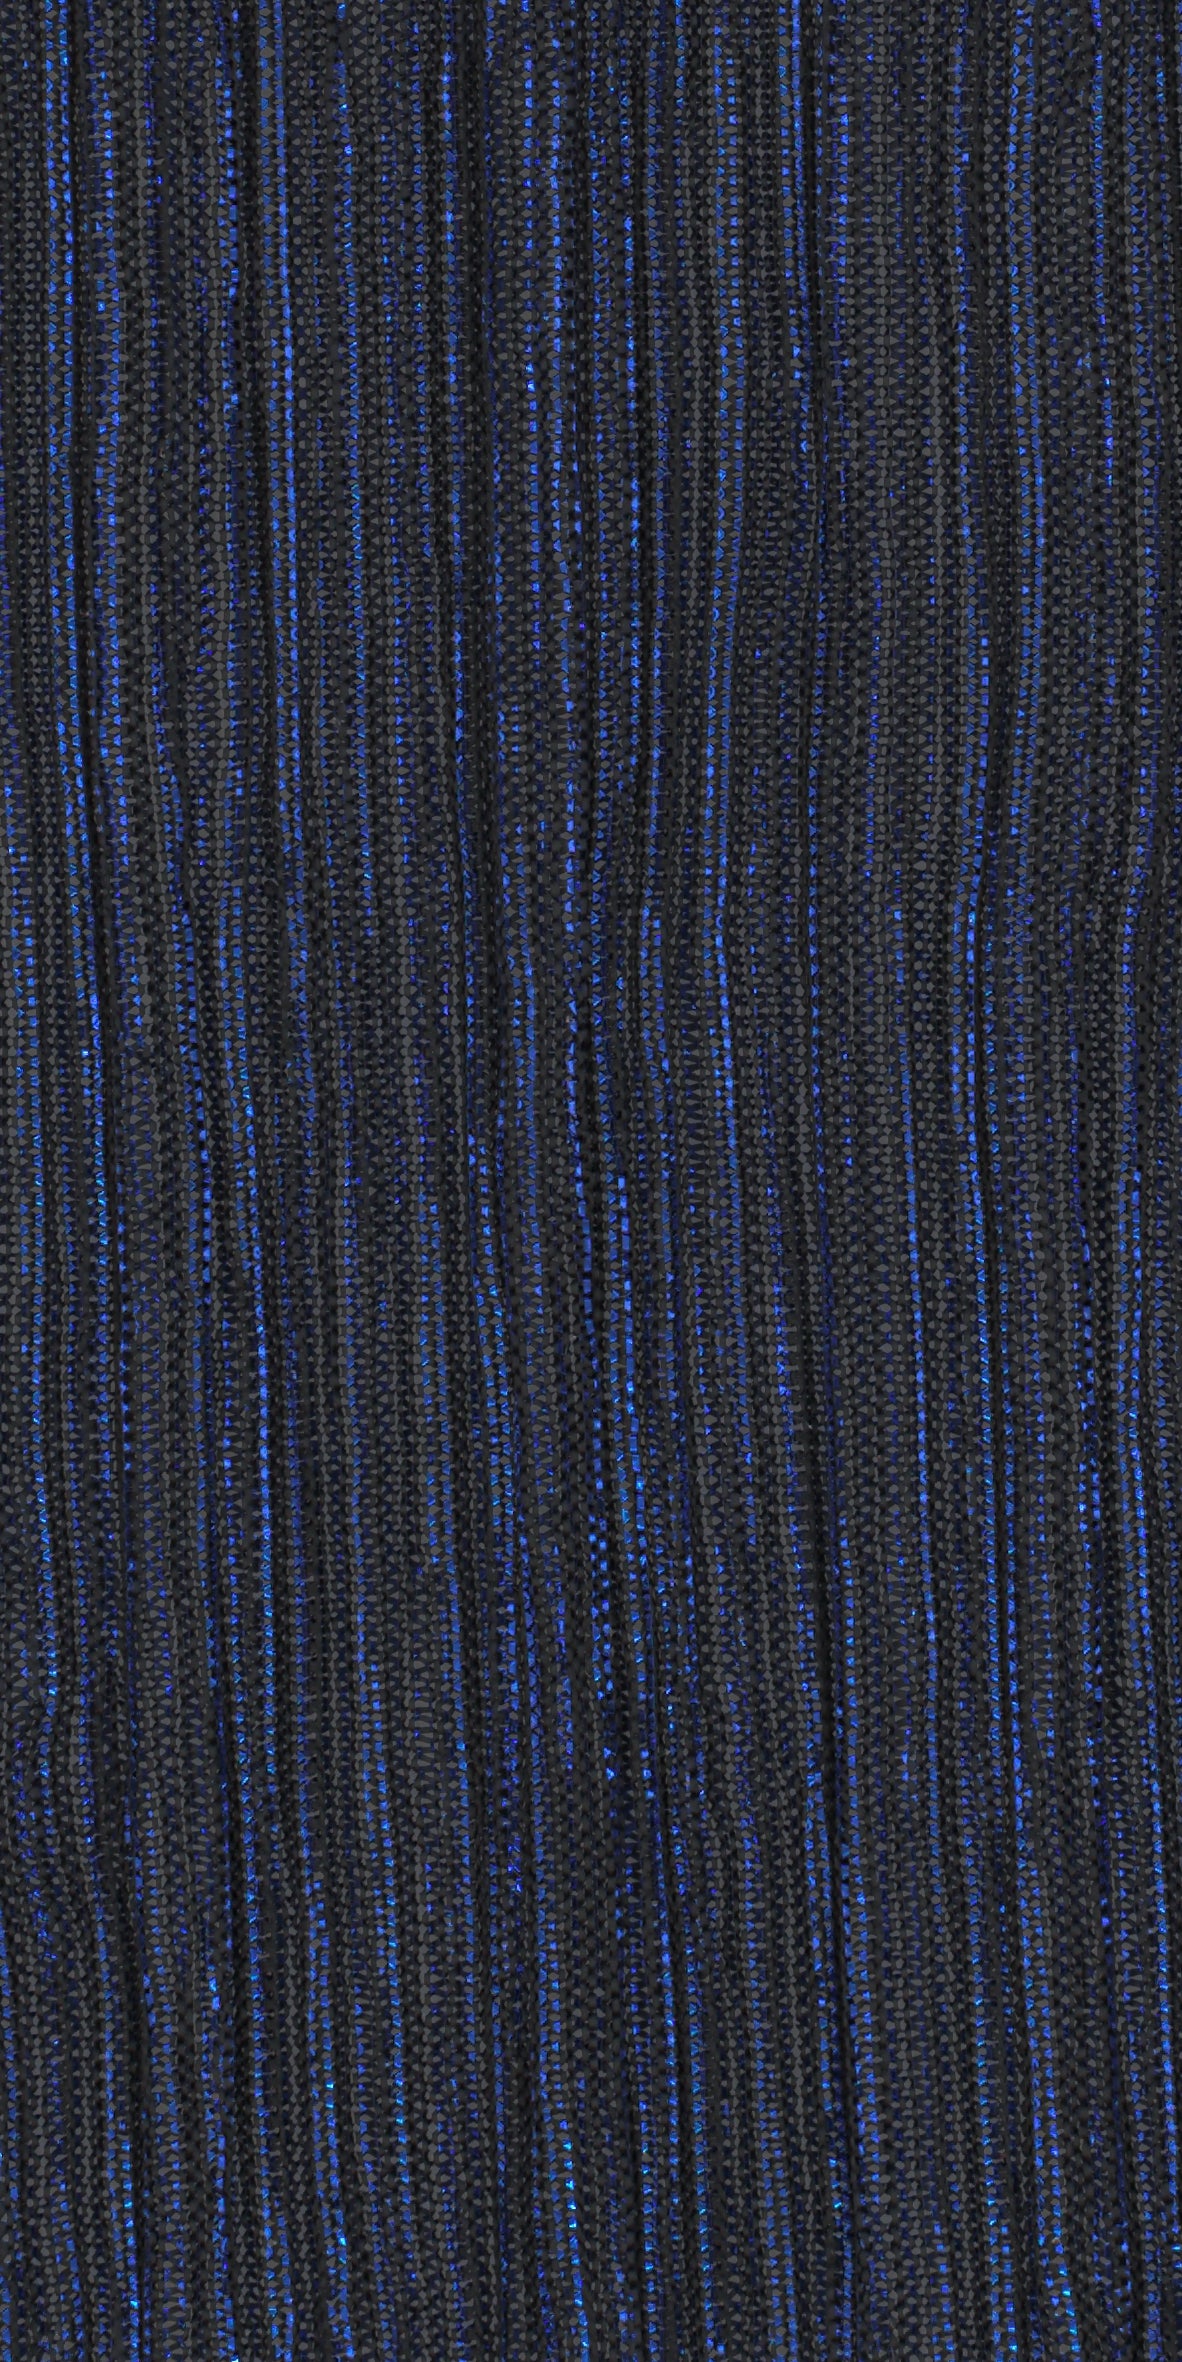 12006-17 Navy Electric Blue Metallic Pleat Plain Dyed Blend 126g/yd 56&quot; blend blue knit metallic plain dyed pleat ppl new Metallic, Pleat - knit fabric - woven fabric - fabric company - fabric wholesale - fabric b2b - fabric factory - high quality fabric - hong kong fabric - fabric hk - acetate fabric - cotton fabric - linen fabric - metallic fabric - nylon fabric - polyester fabric - spandex fabric - chun wing hing - cwh hk - fabric worldwide ship - 針織布 - 梳織布 - 布料公司- 布料批發 - 香港布料 - 秦榮興